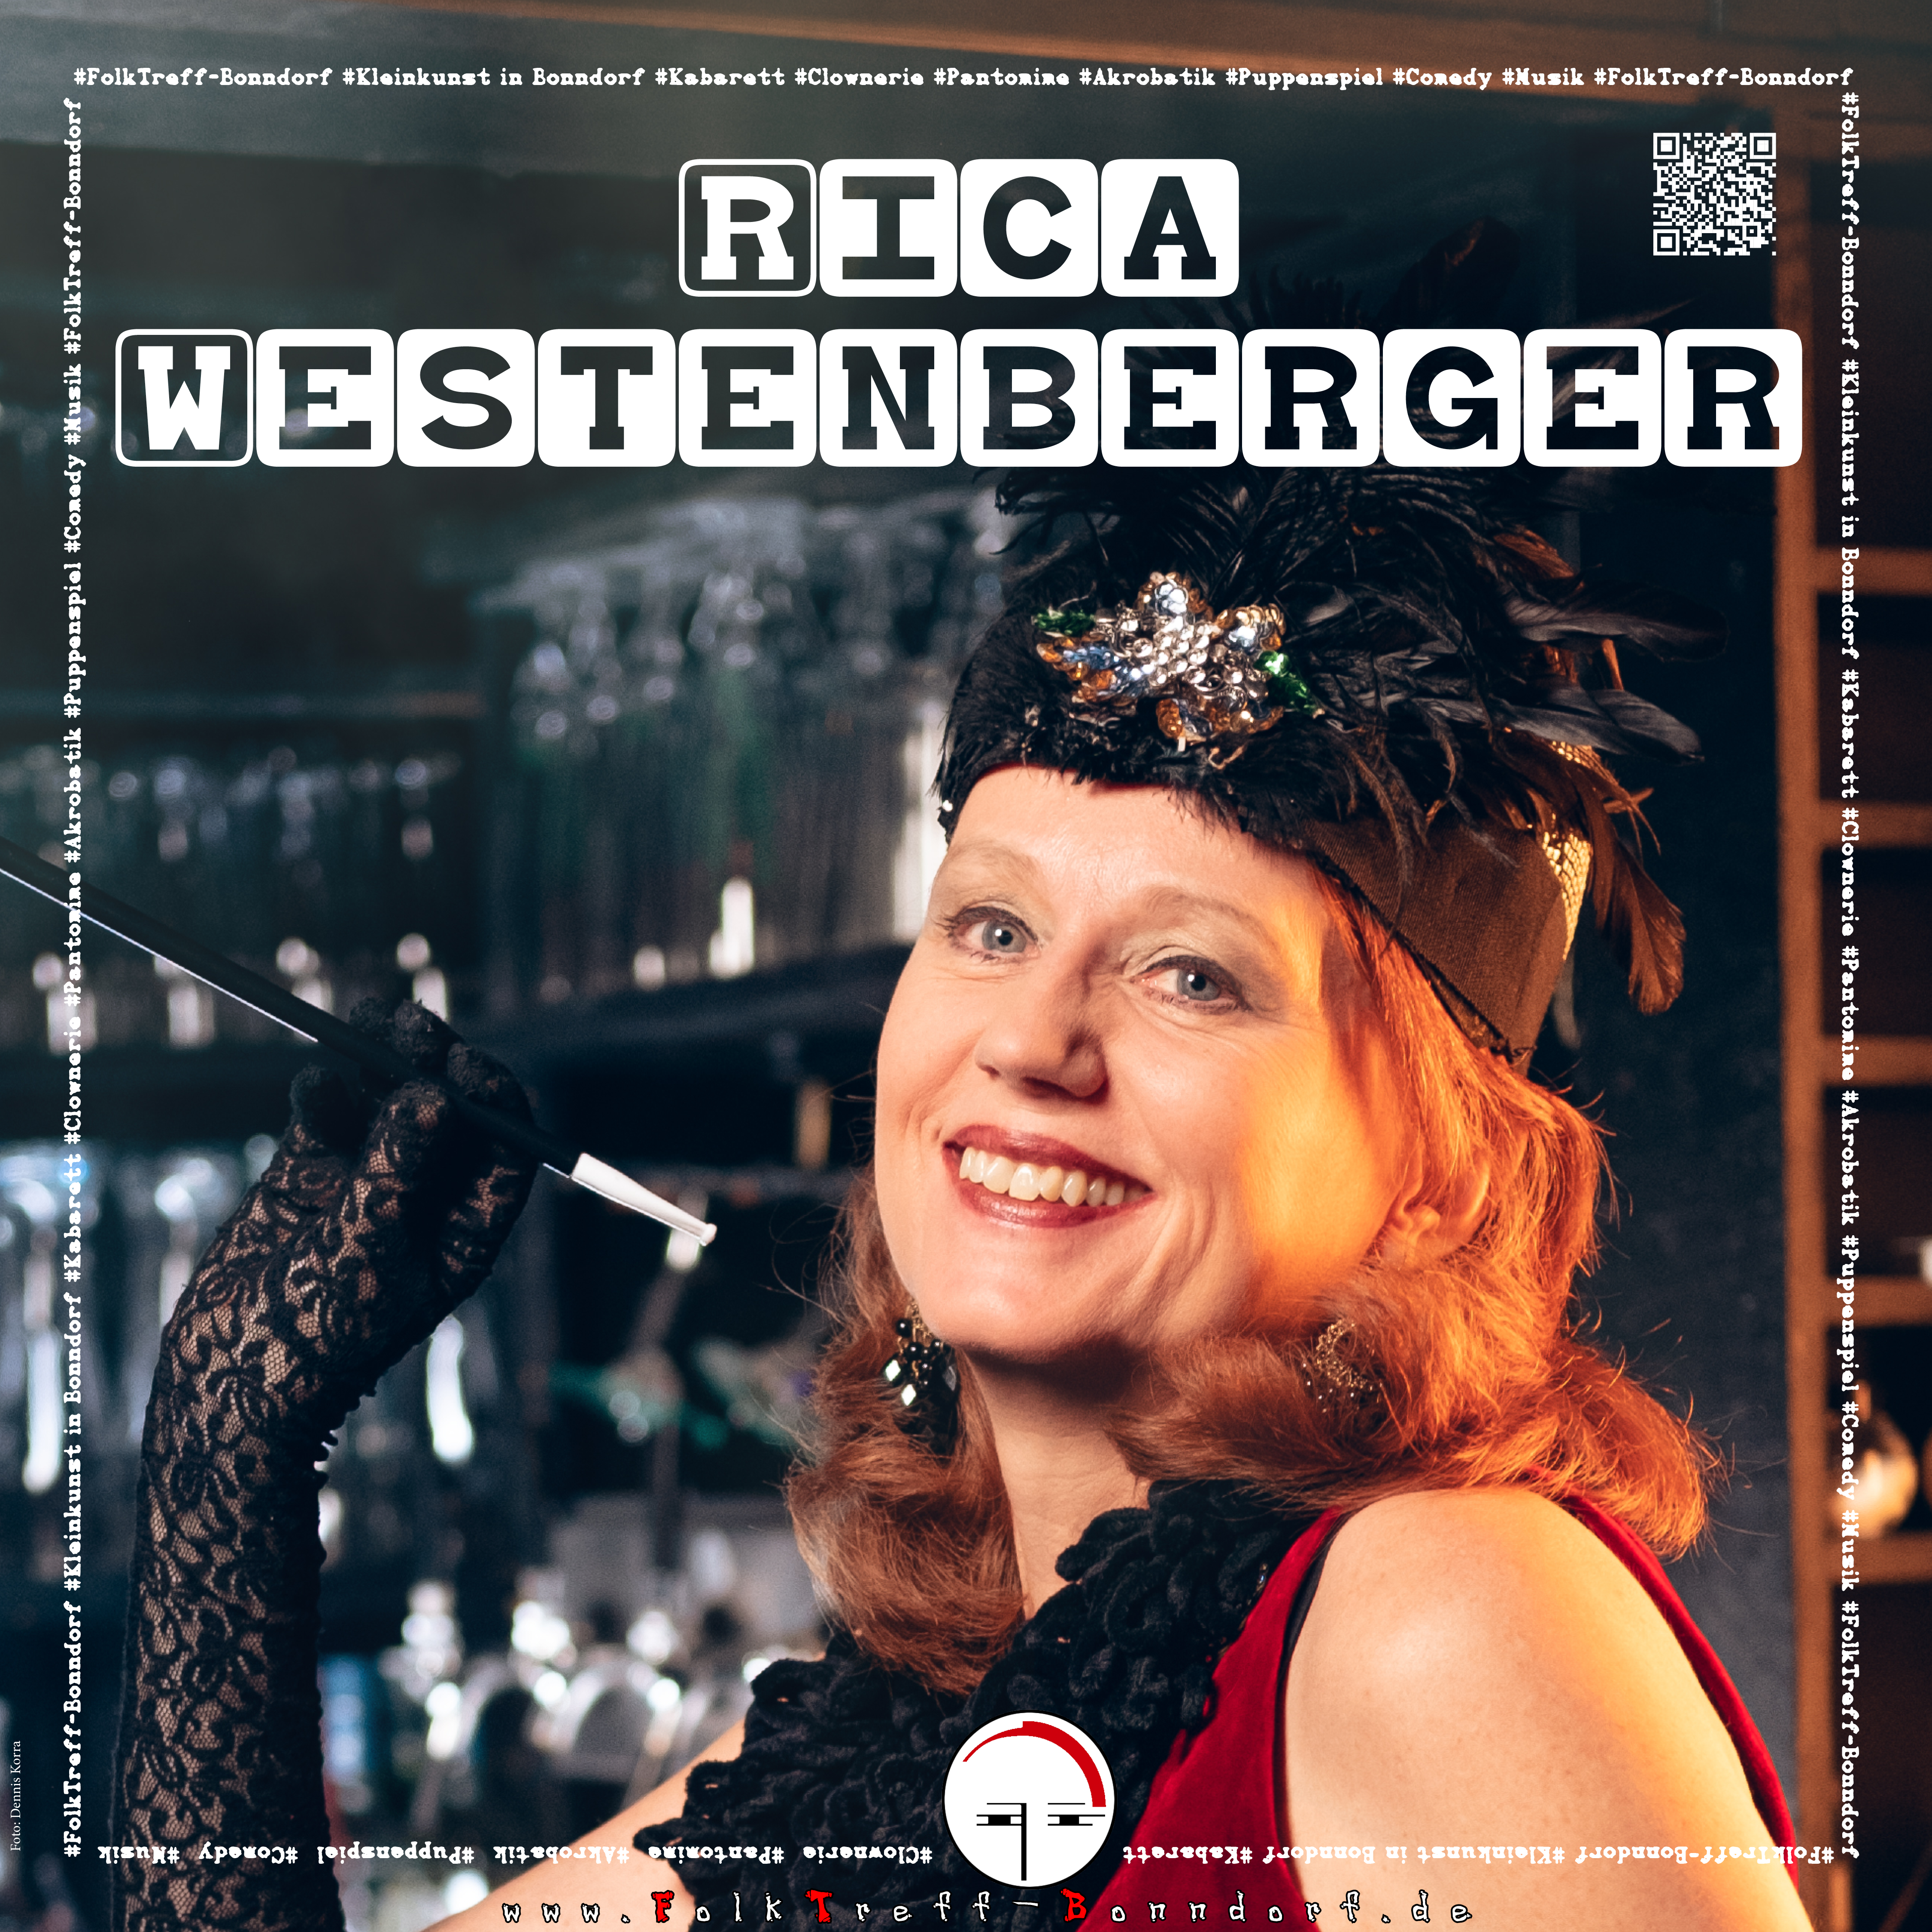 Rica Westenberger